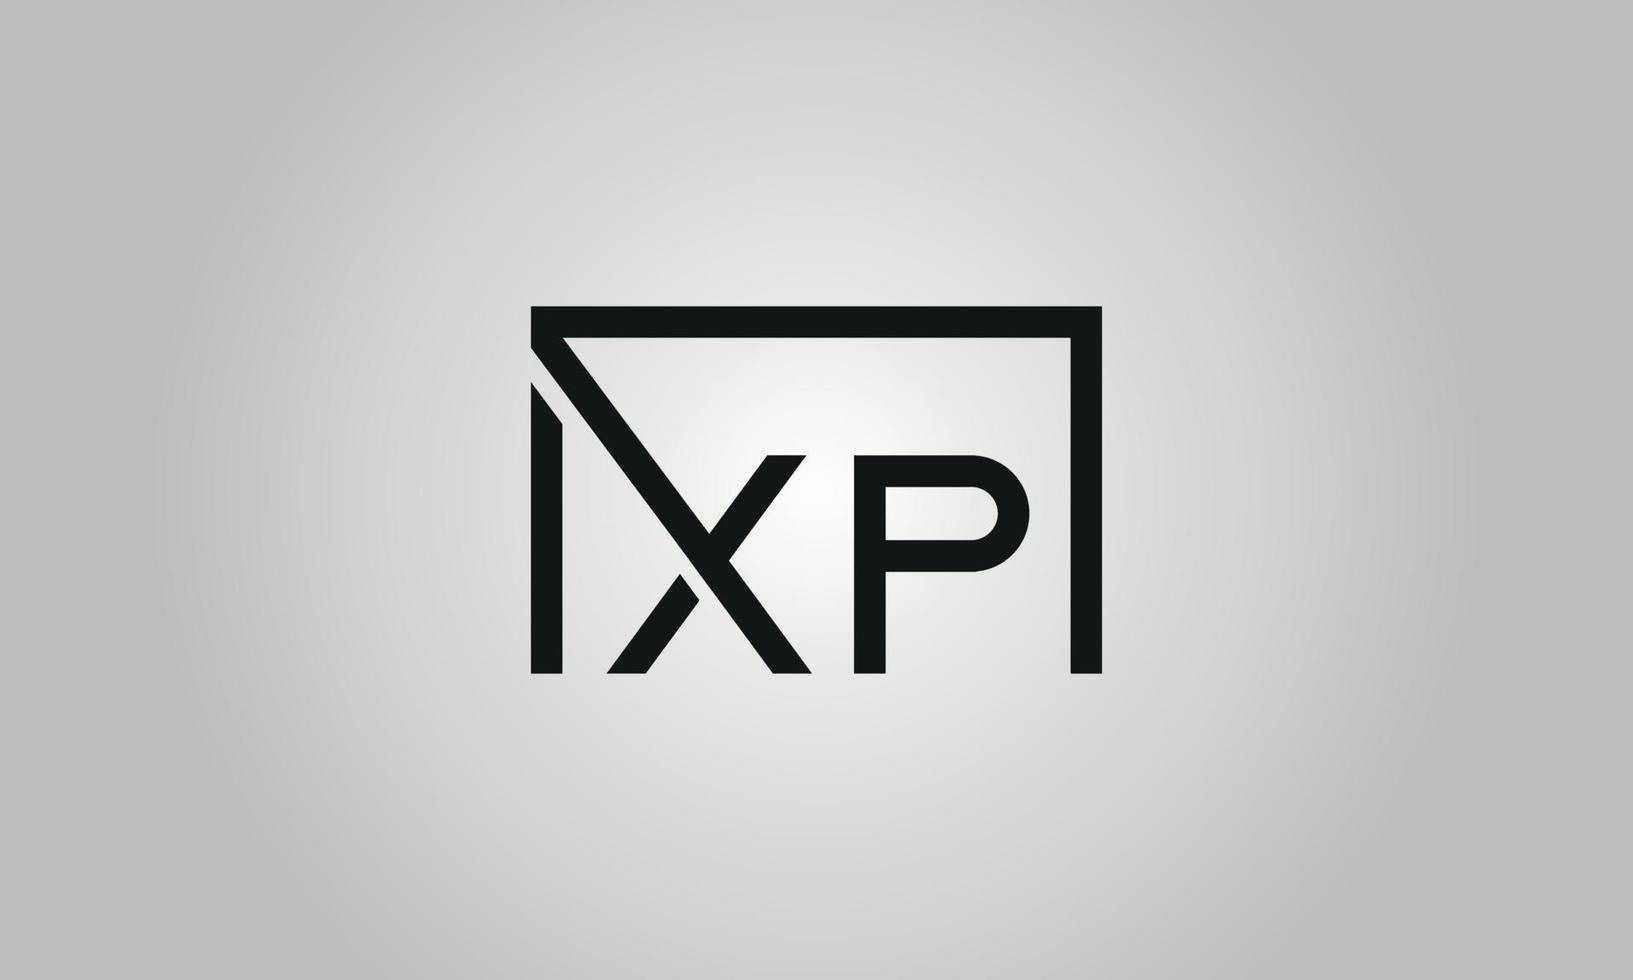 design de logotipo carta xp. xp logotipo com forma quadrada em cores pretas modelo de vetor livre.